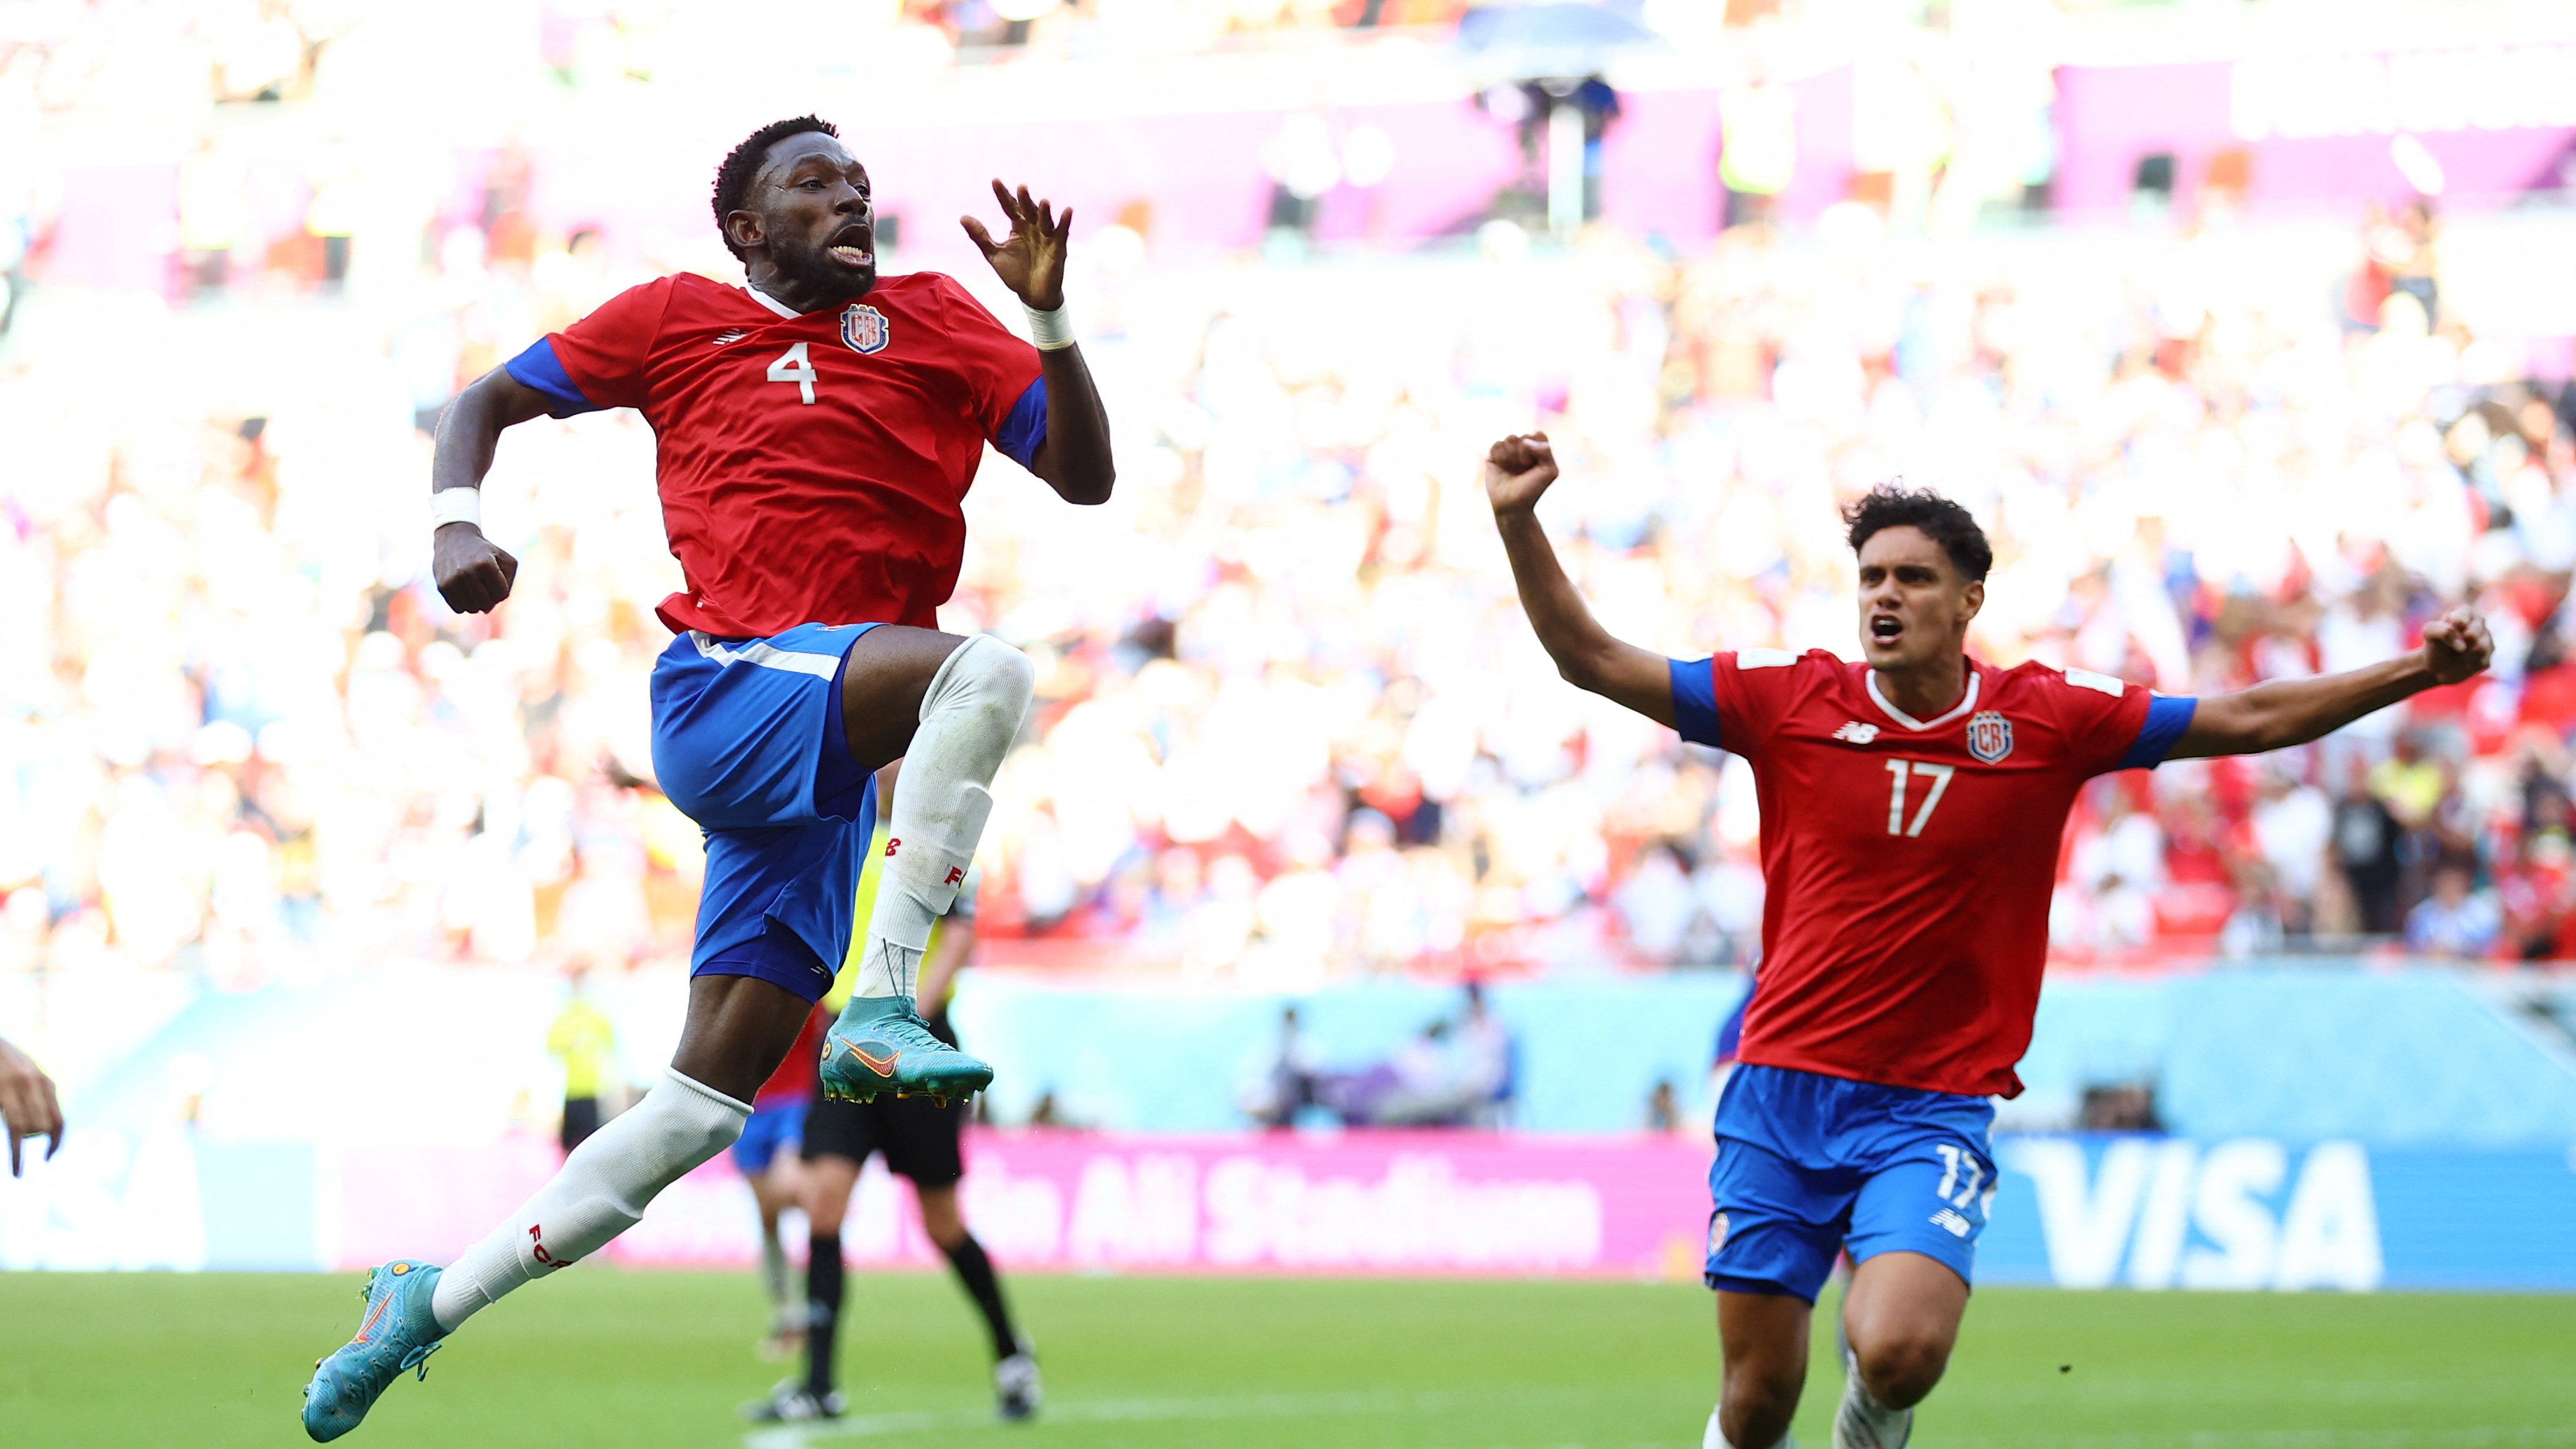 Luego de la goleada ante España, Costa Rica se recuperó al derrotar a Japón. REUTERS/Hannah Mckay